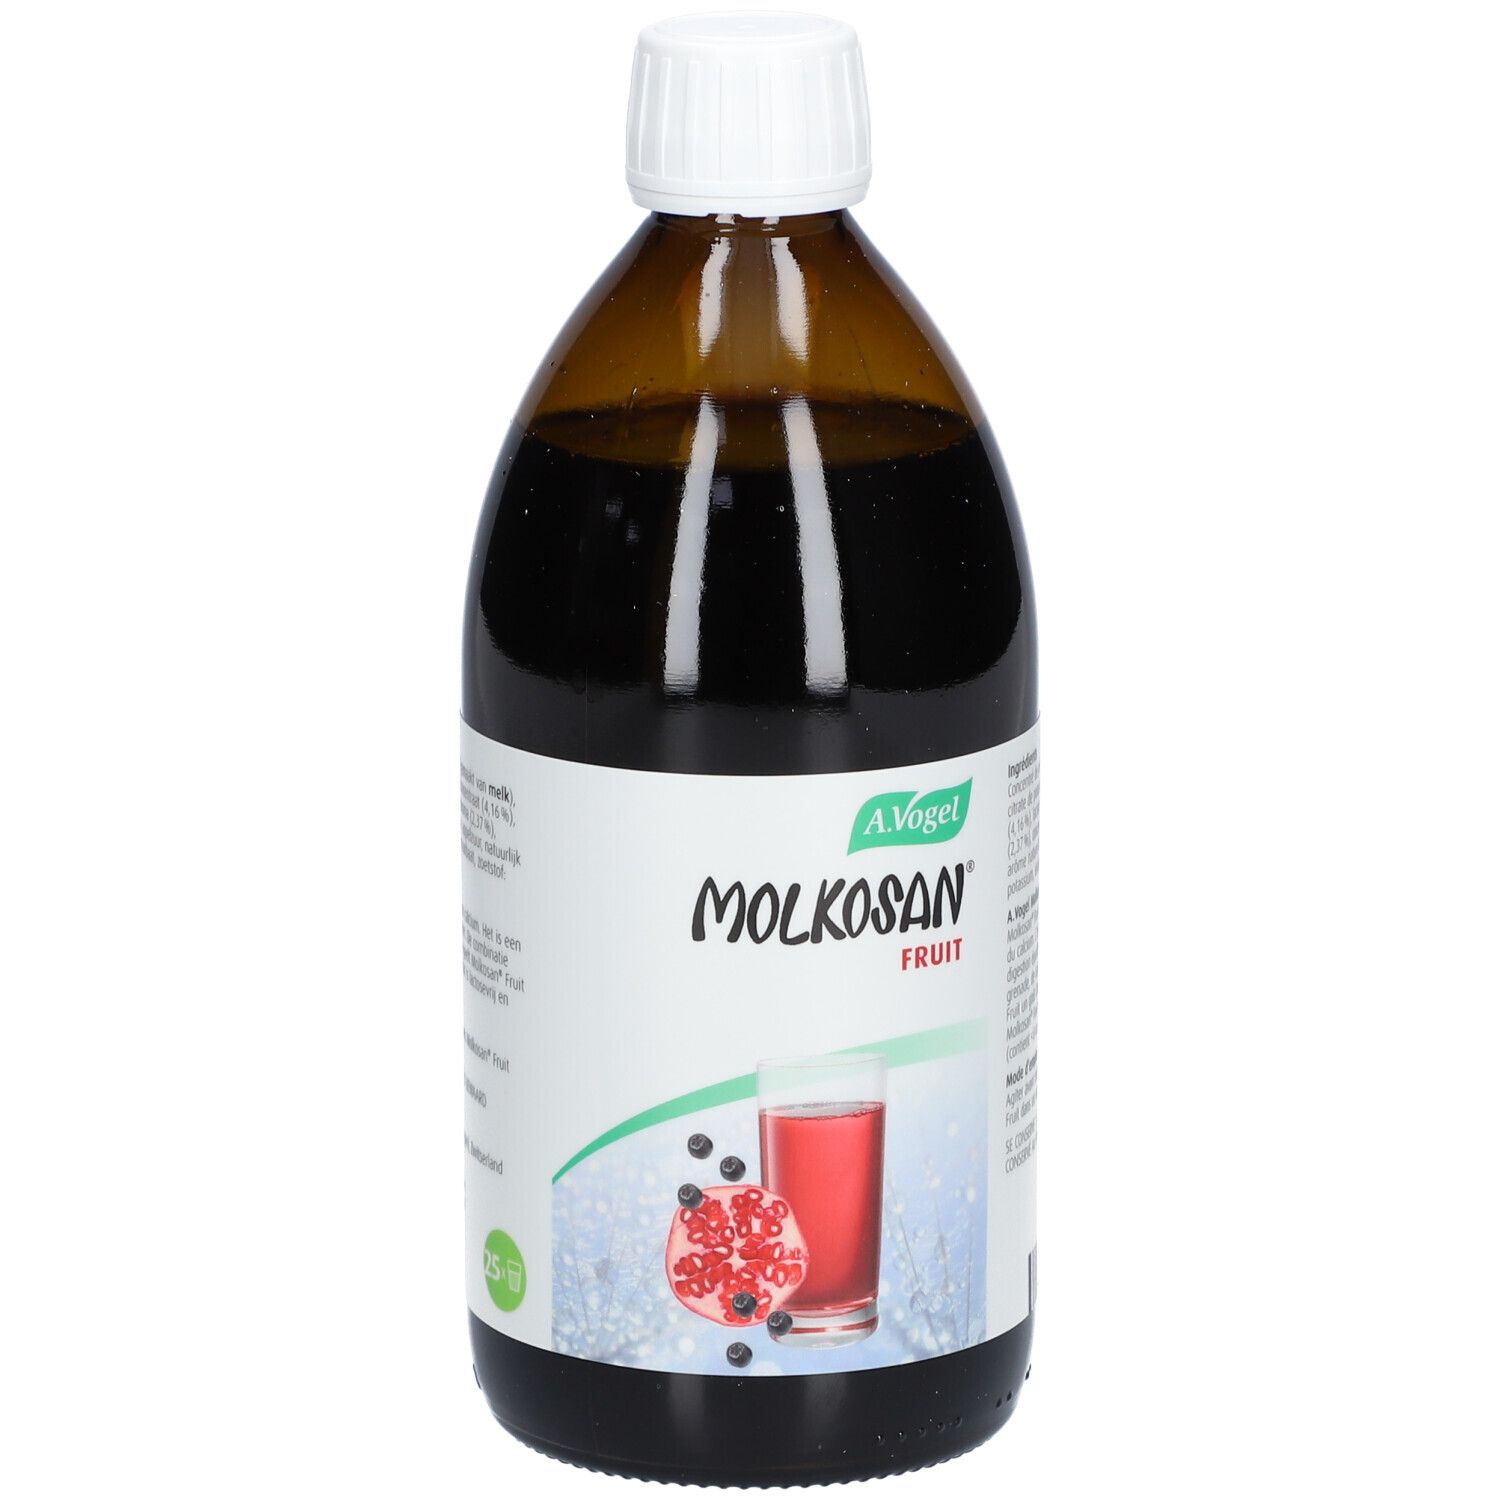 A. Vogel Molkosan® Fruit Molkekonzentrat fermentiert mit Calcium